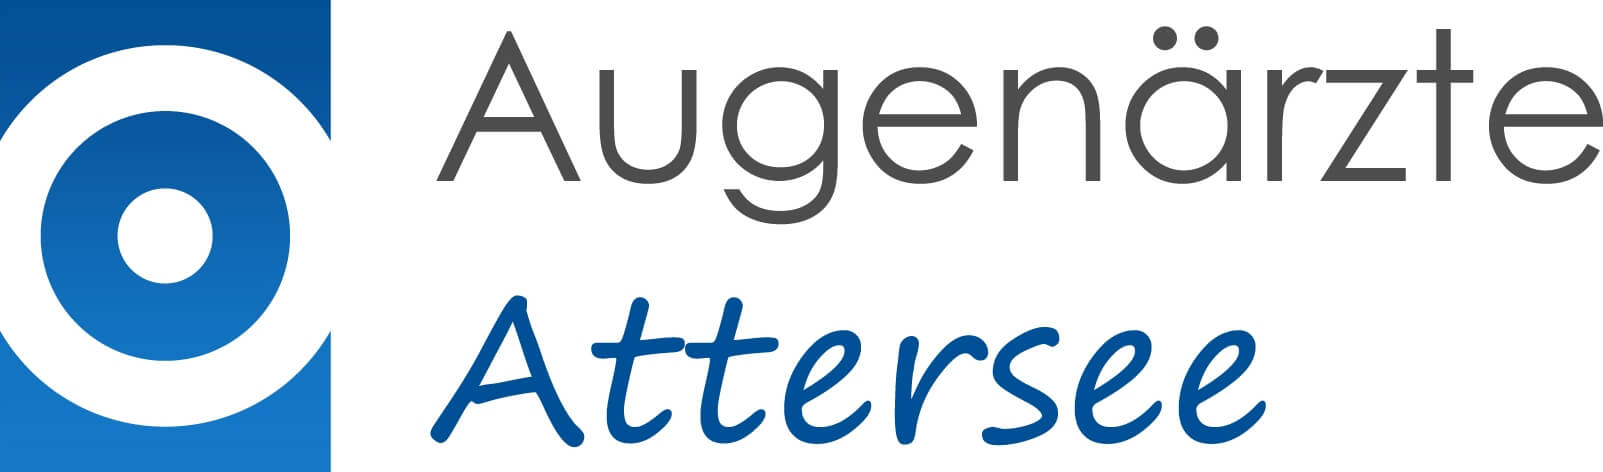 Das Logo der Augenärzte Attersee besteht aus einem an den Seiten links und rechts abgeschnittenen Kreis auf blauem Hintergrund und ist viereckig